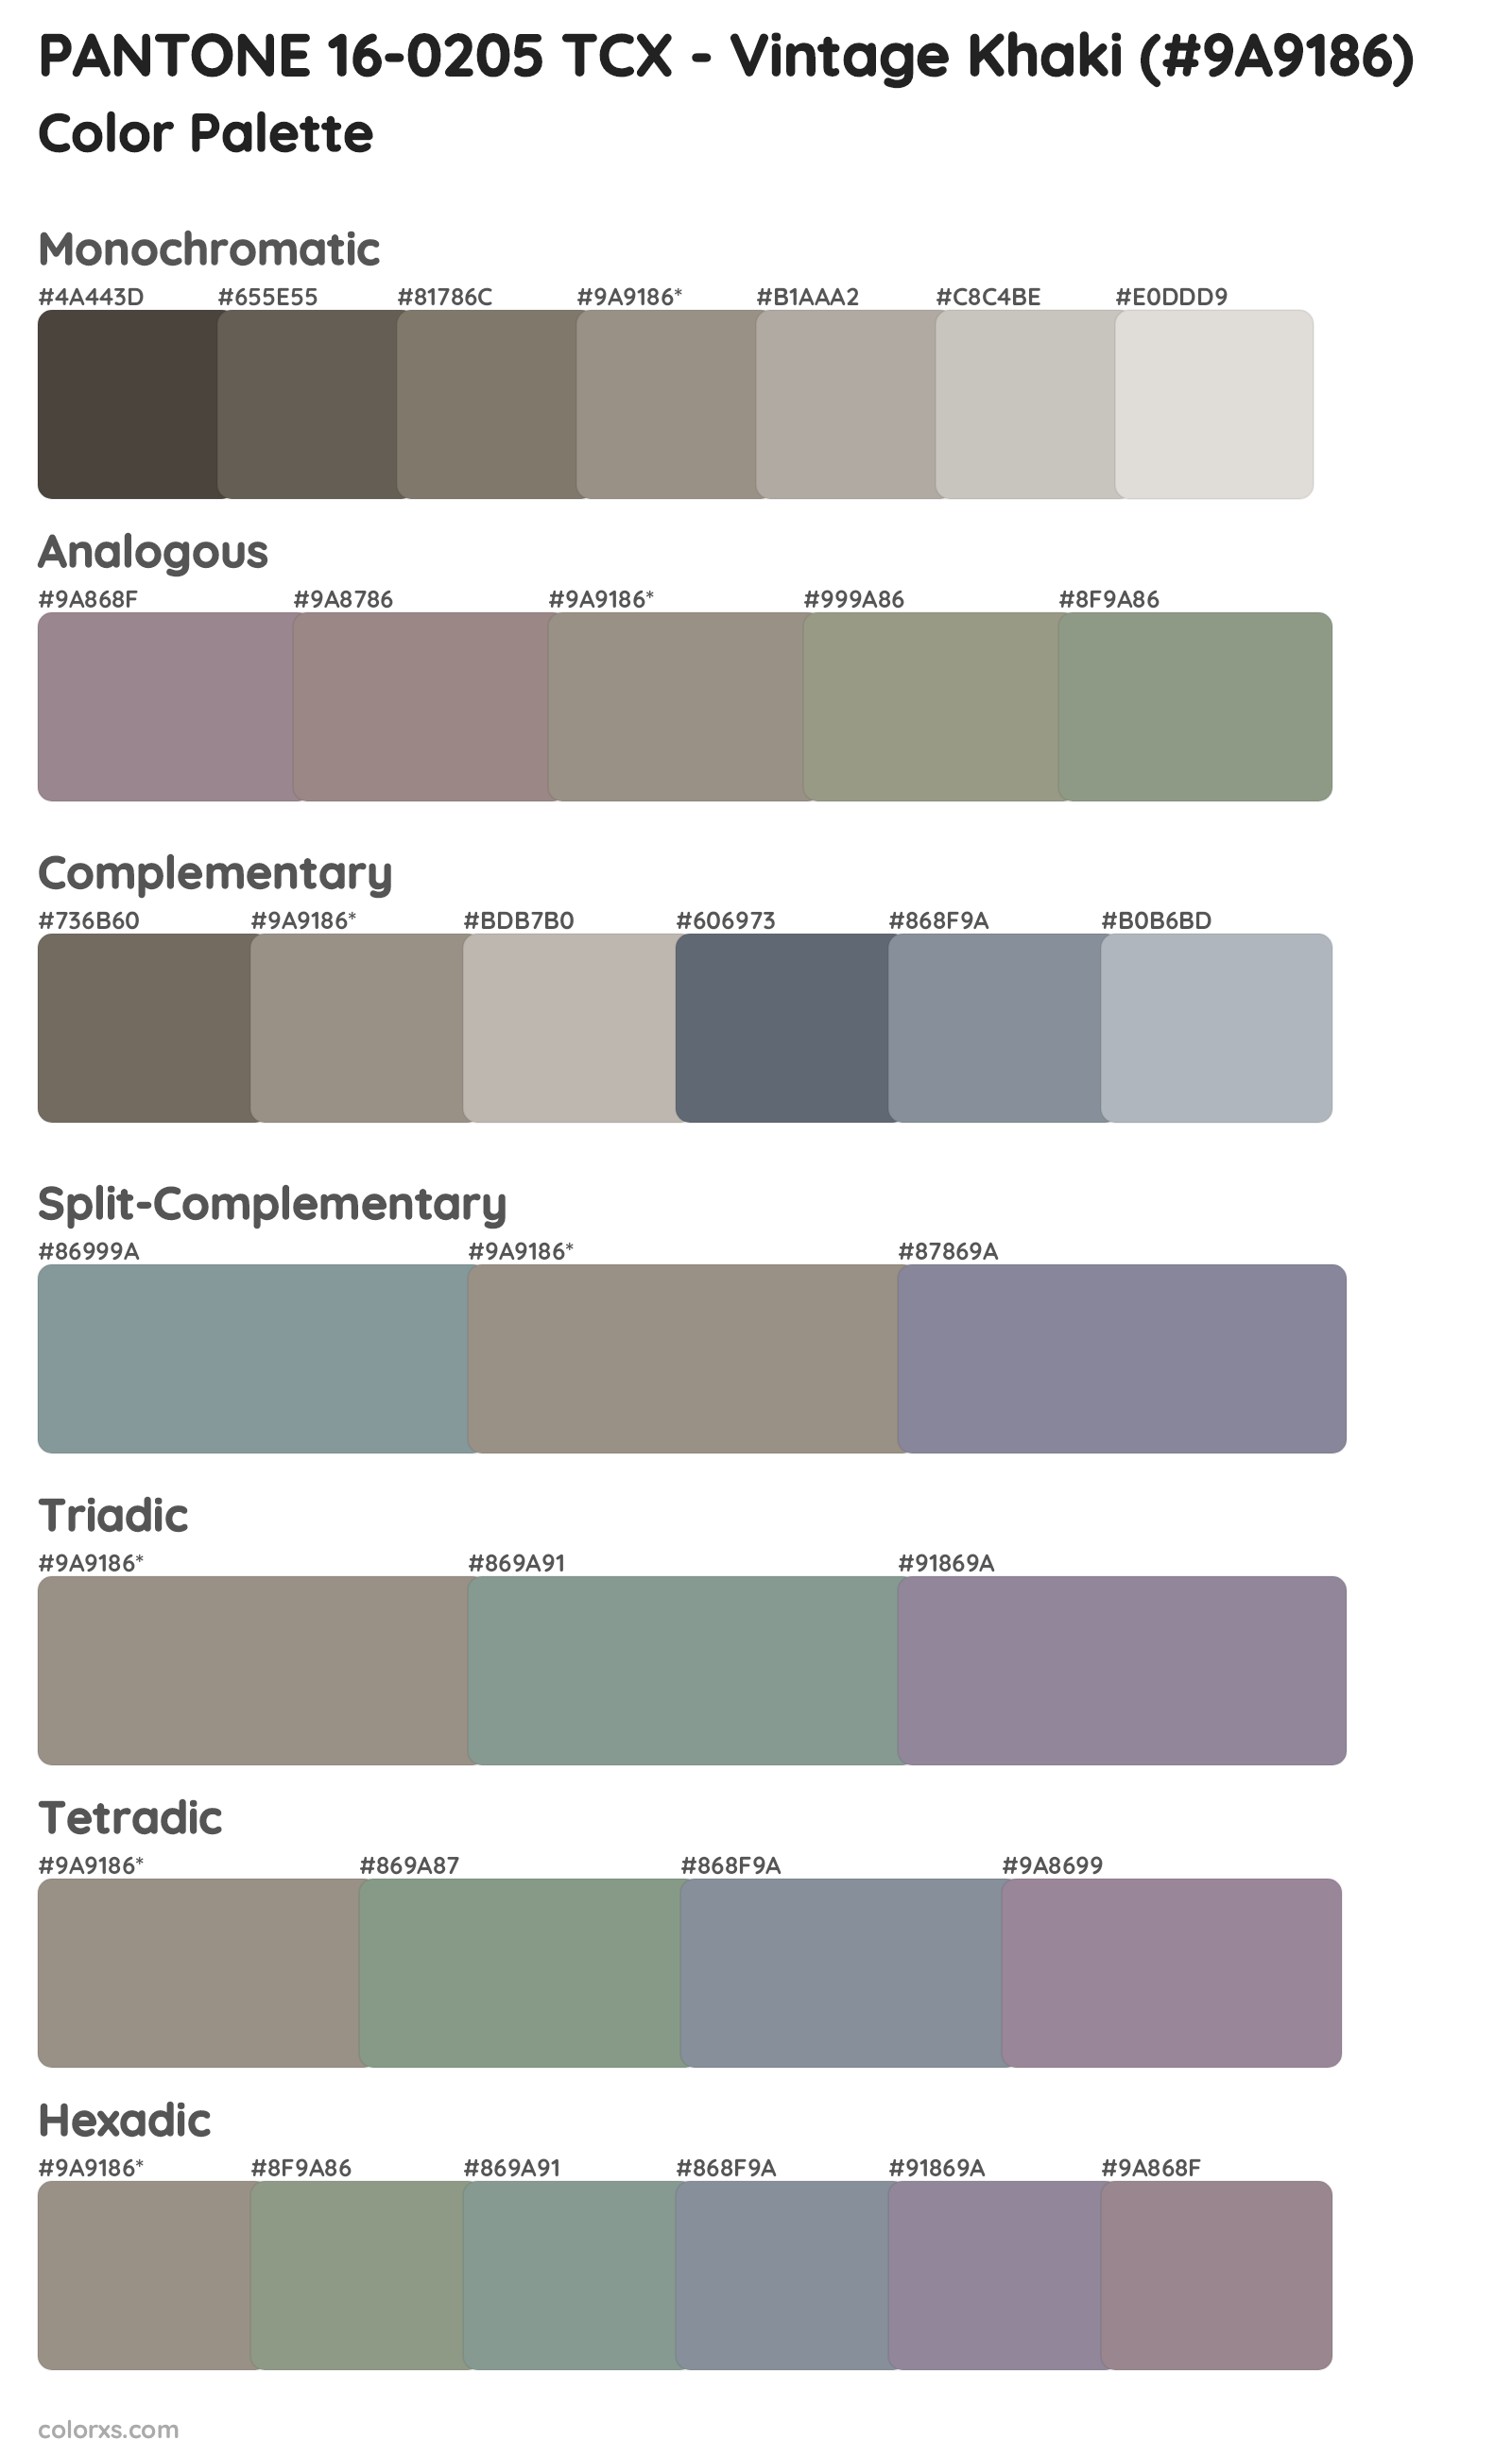 PANTONE 16-0205 TCX - Vintage Khaki Color Scheme Palettes